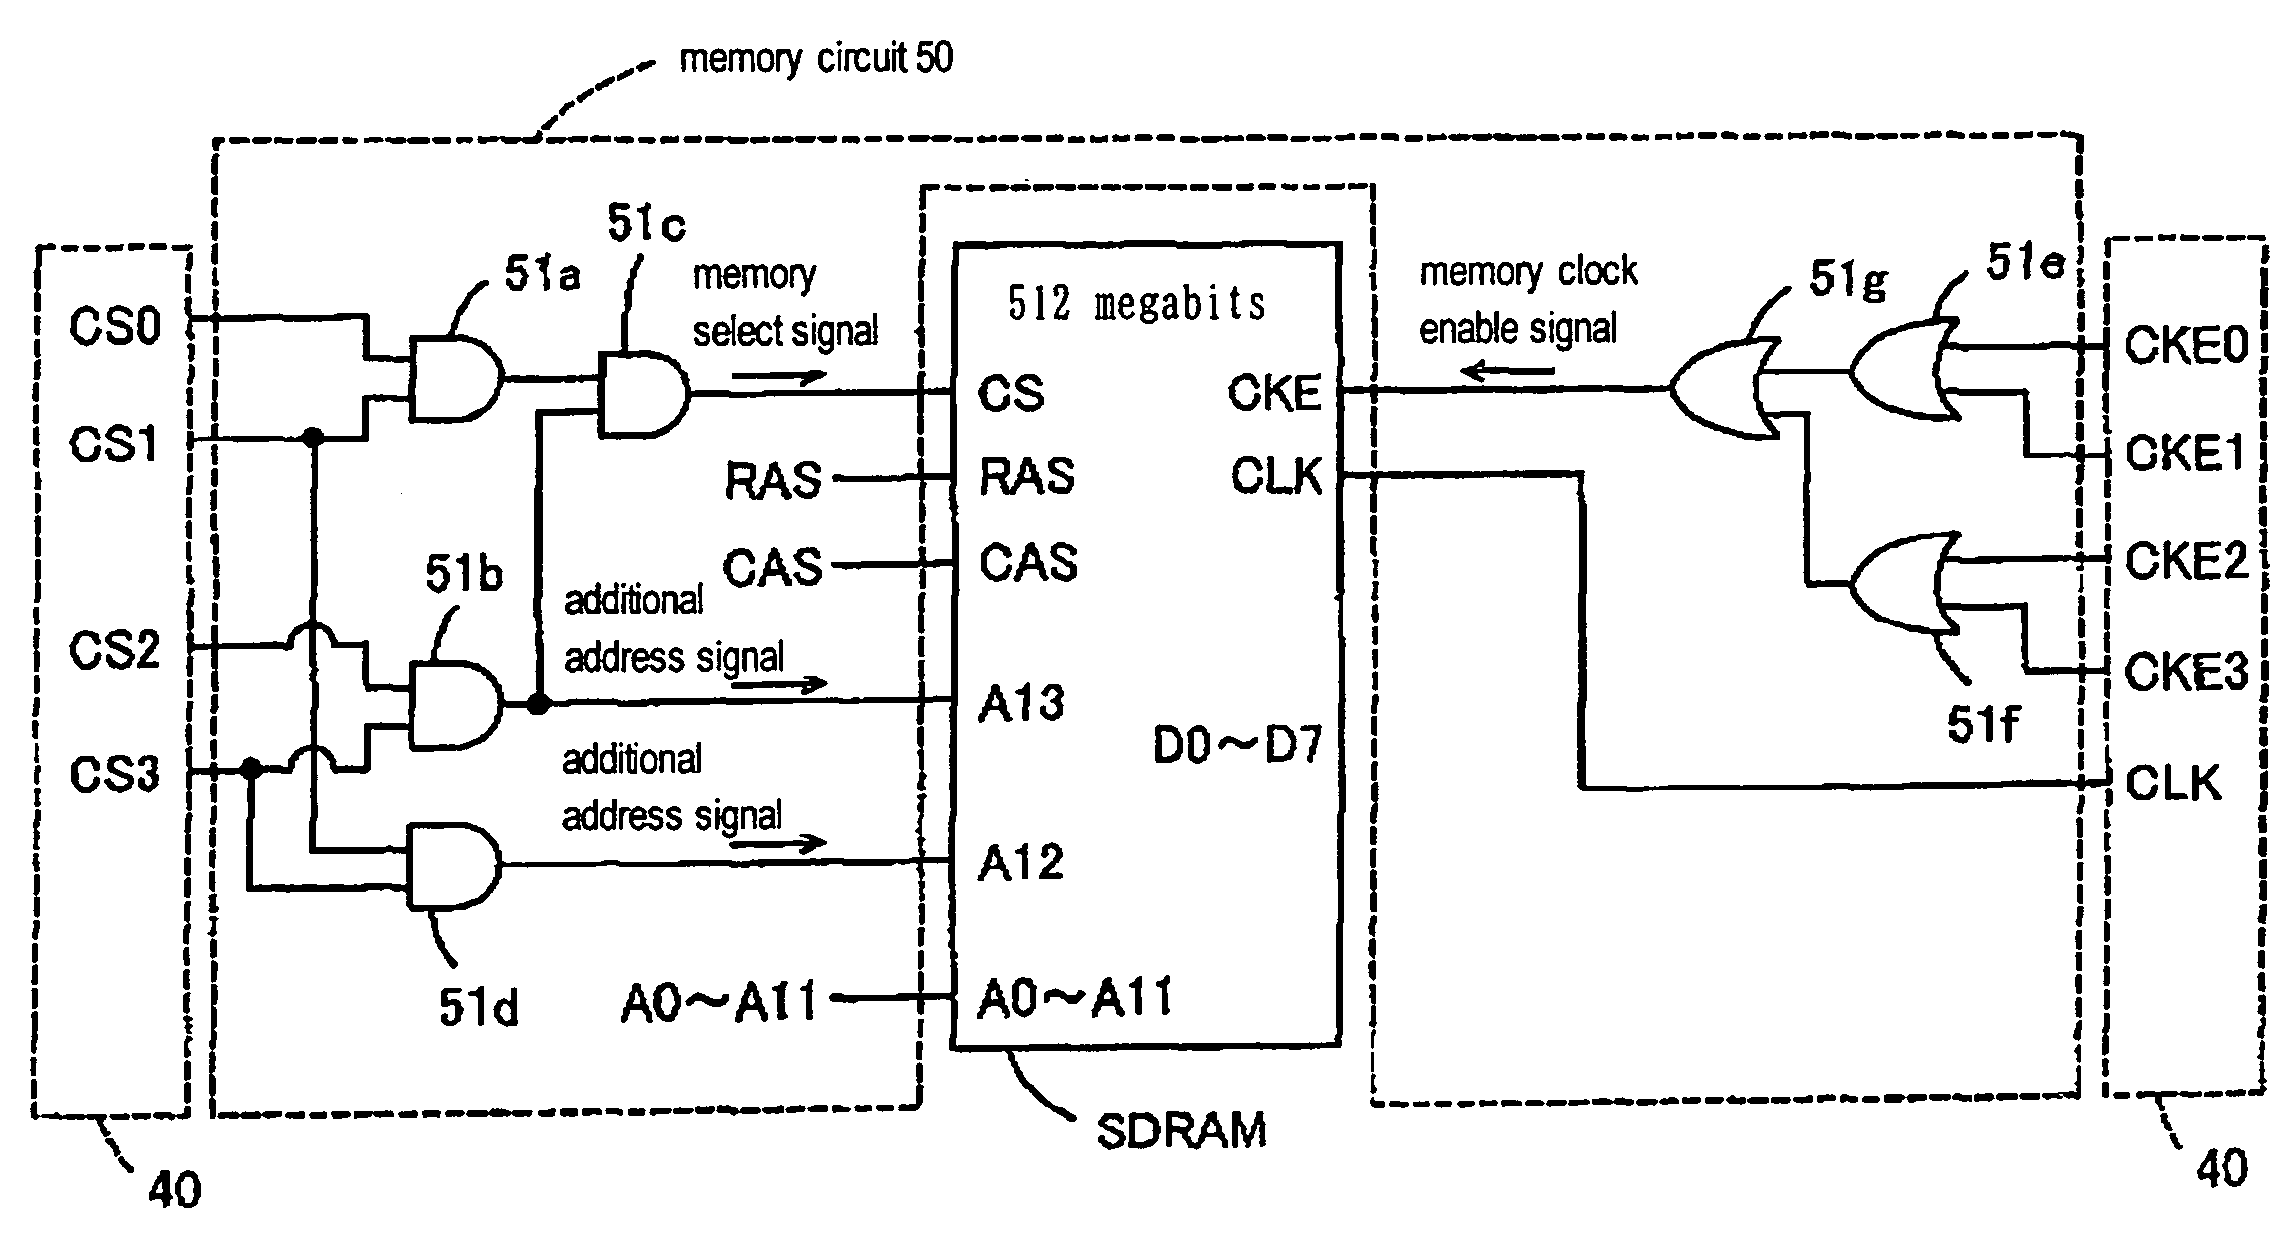 Memory module and memory-assist module